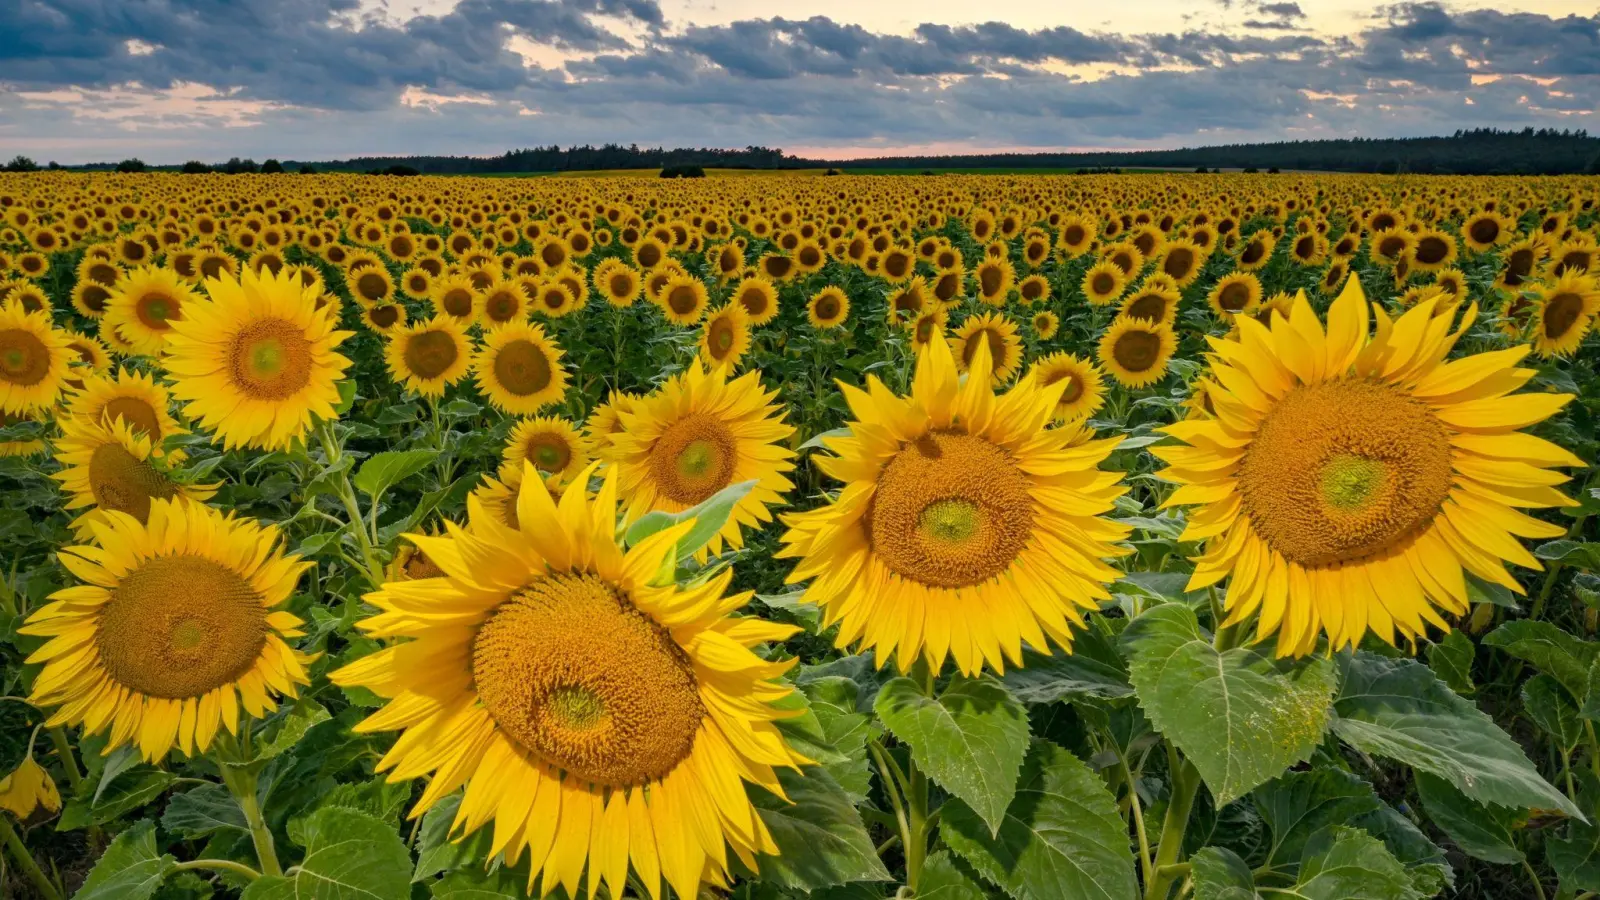 Sonnenblumen in Ostbrandenburg: Die Landwirte in Deutschland haben dieses Jahr deutlich mehr Sonnenblumen angebaut als zuvor. Hintergrund ist der drohende Ausfall von Importen aus der Ukraine. (Foto: Patrick Pleul/dpa)